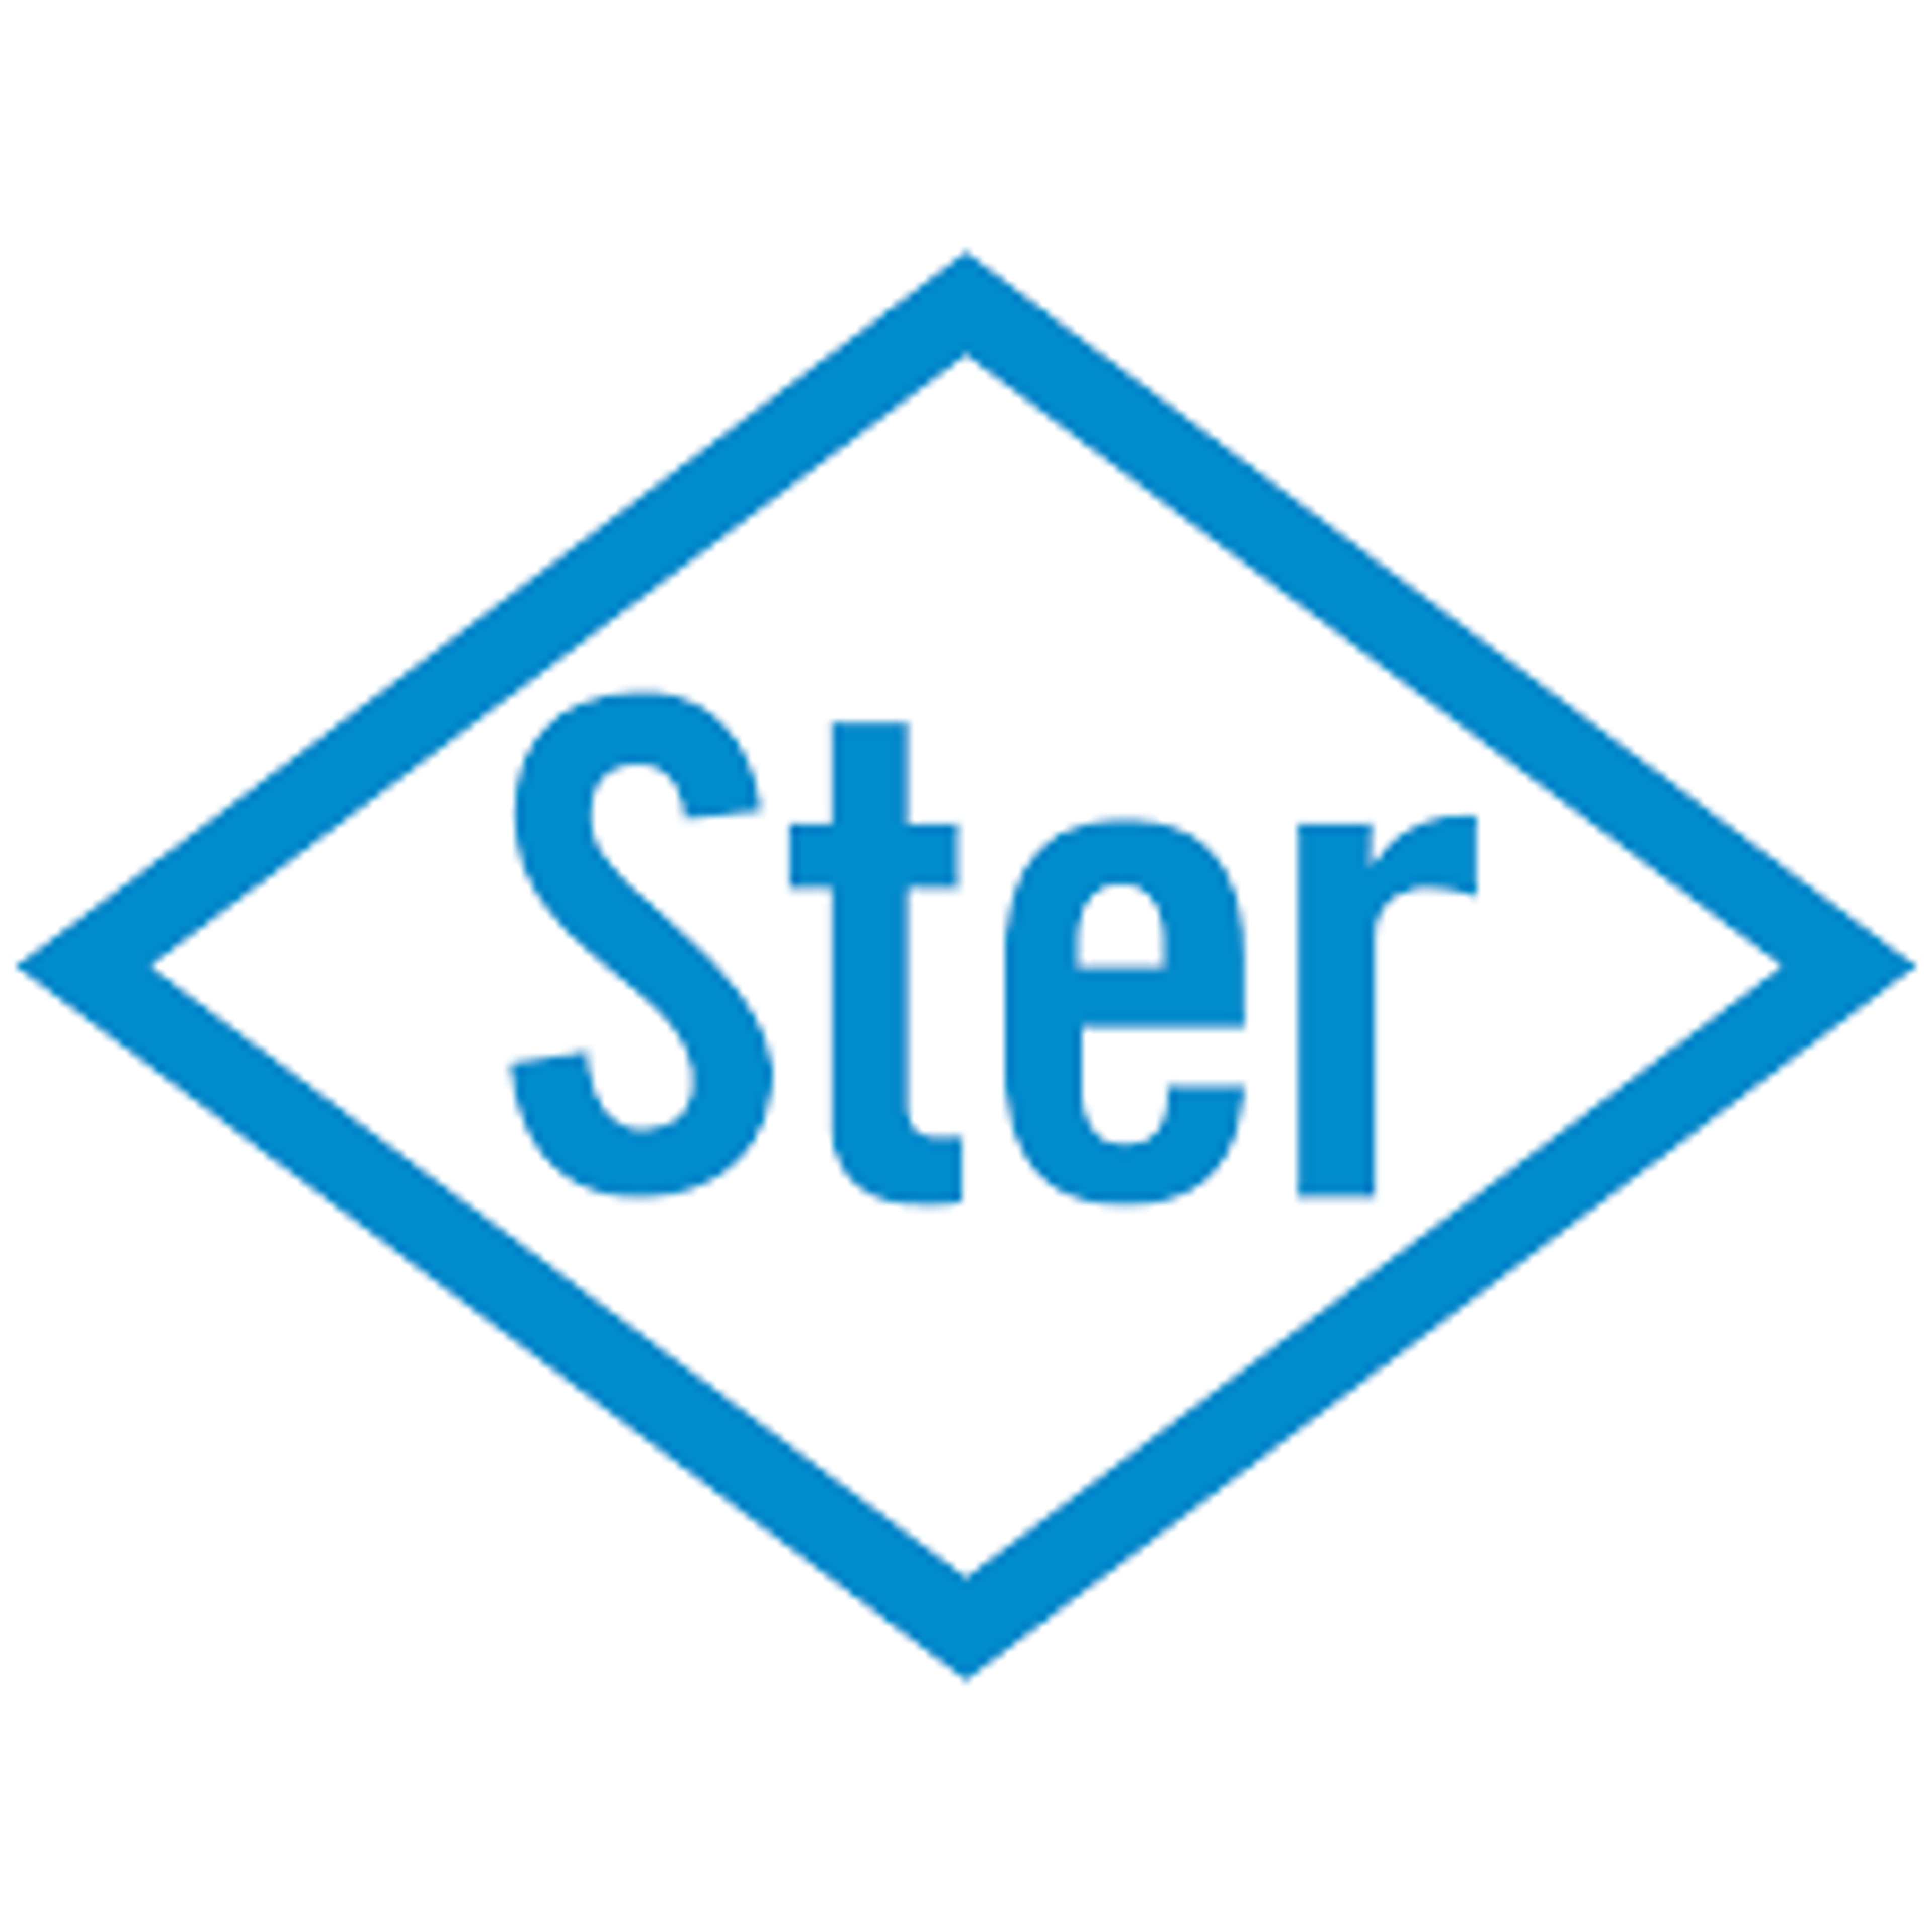 Vereenvoudigde inkoopmogelijkheden STER vanaf 2018